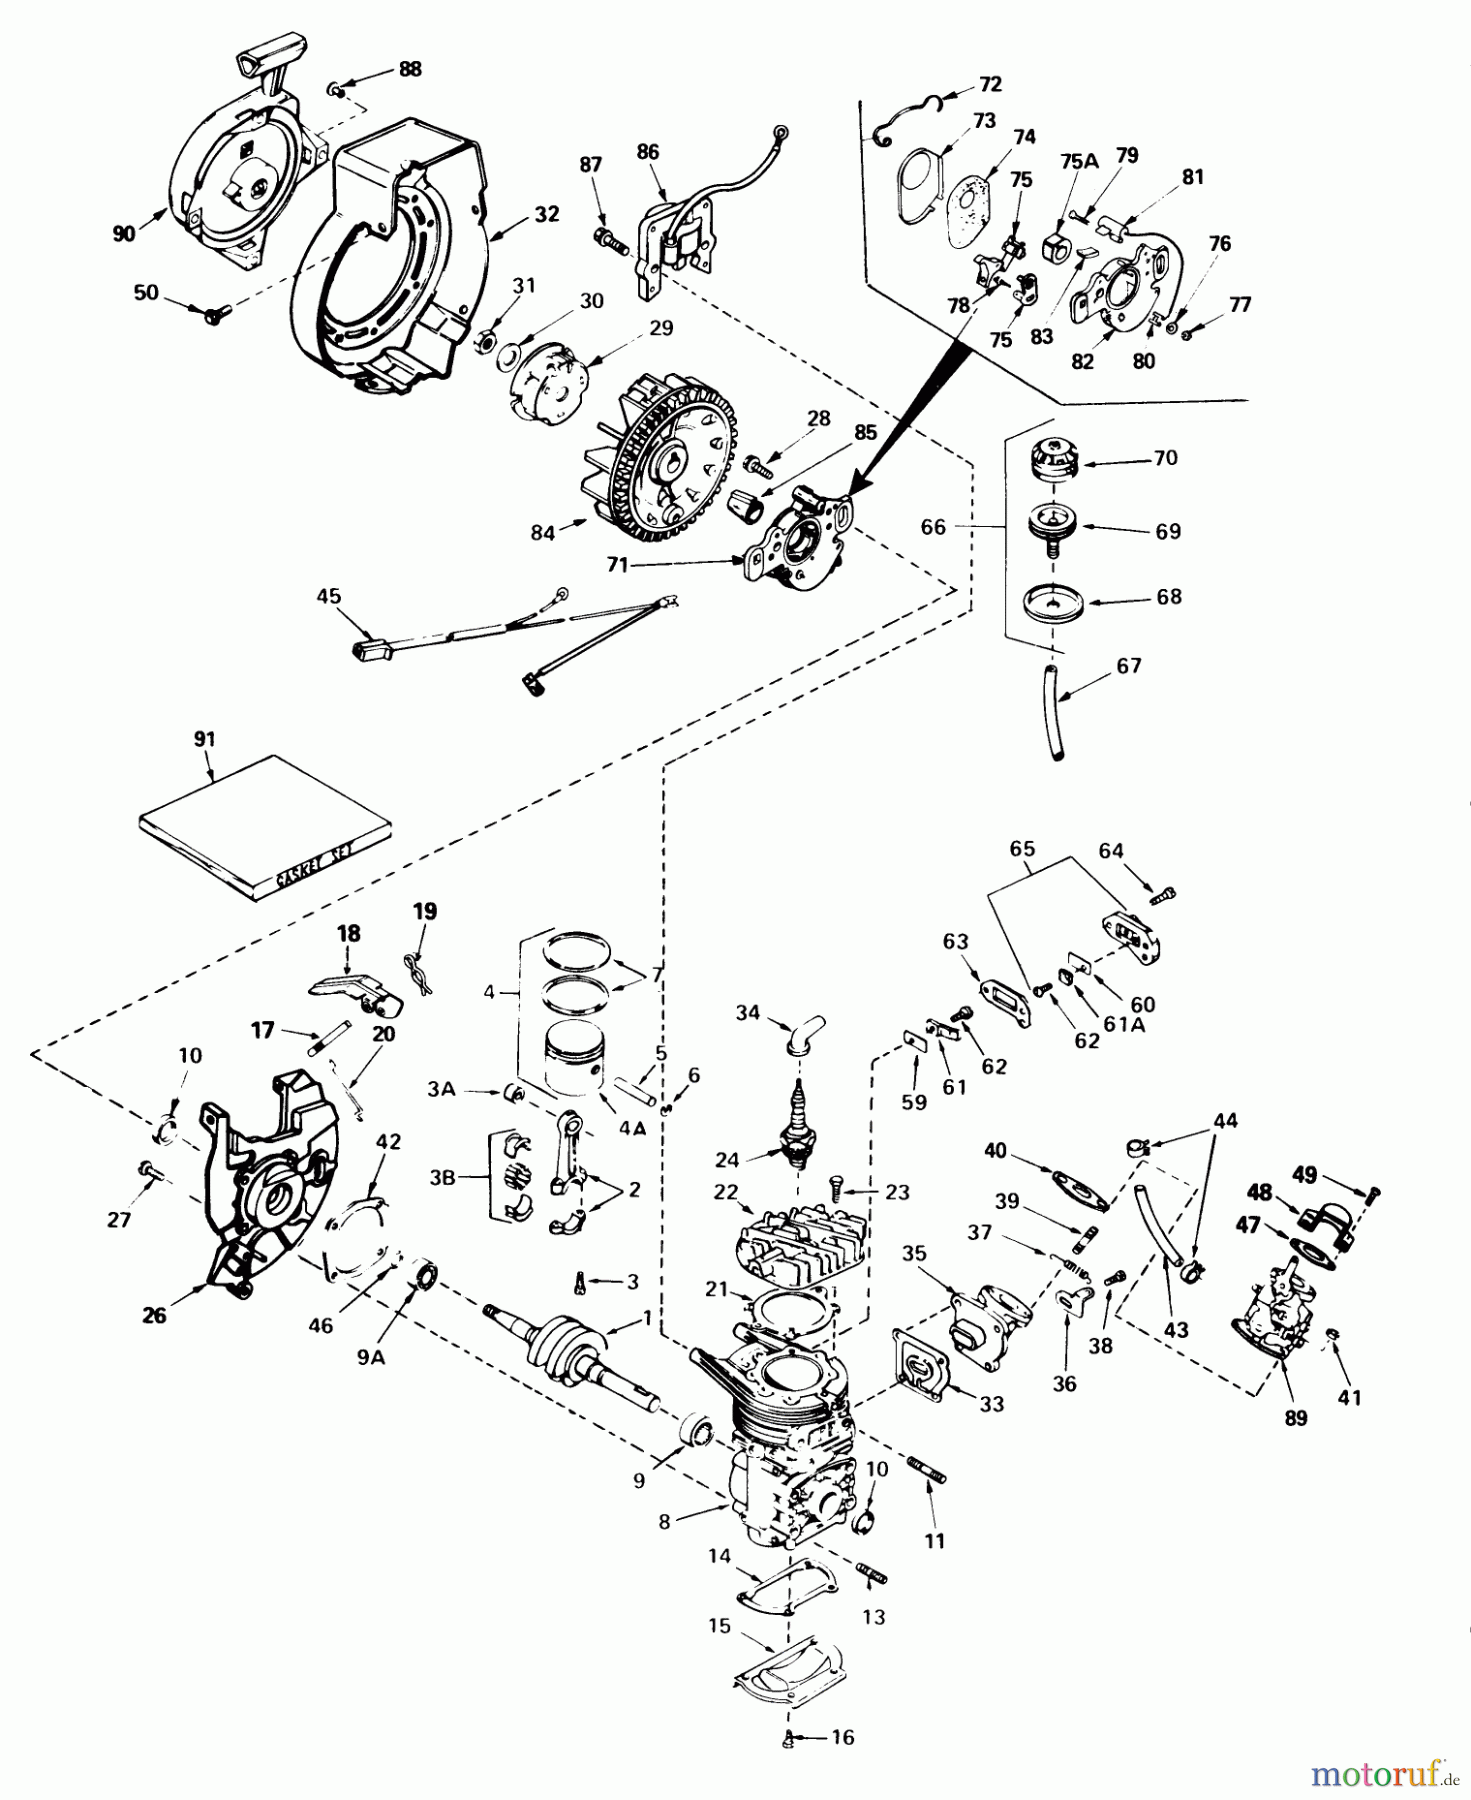  Toro Neu Snow Blowers/Snow Throwers Seite 1 38232 (S-200) - Toro S-200 Snowthrower, 1985 (5000001-5999999) ENGINE ASSEMBLY (ENGINE TECUMSEH MODEL NO. AH520 TYPE 1602)